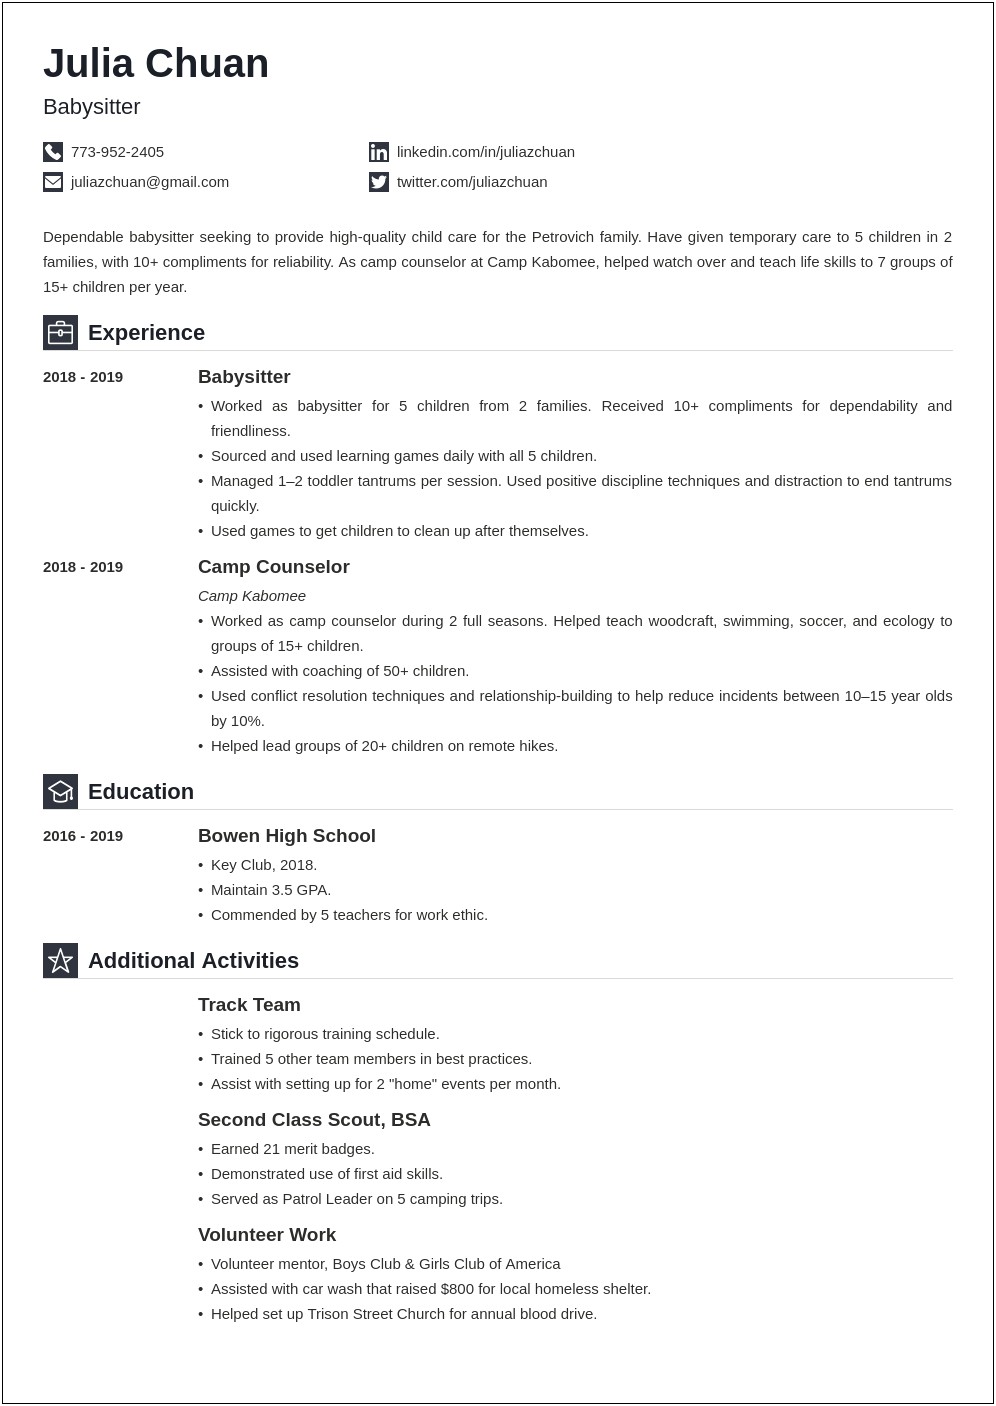 Sample Resume For Teachers For Preschool